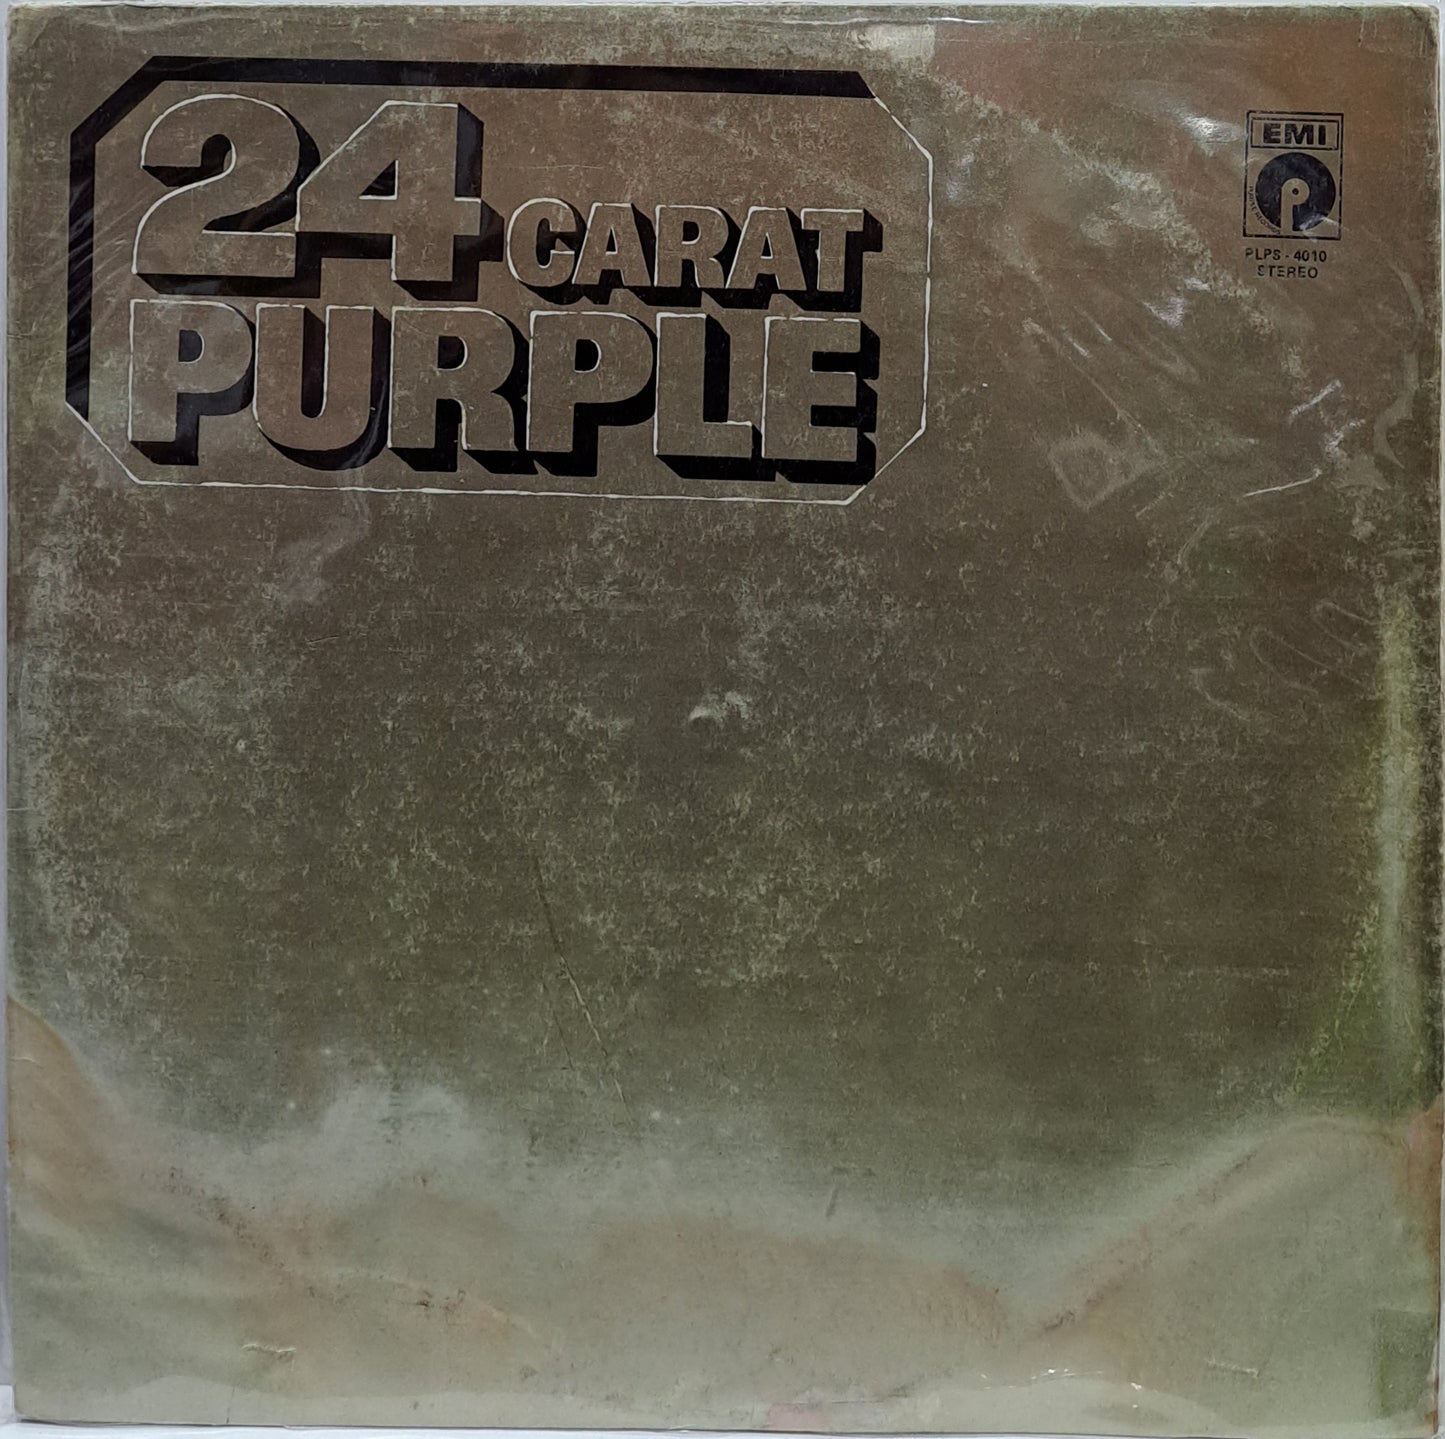 DEEP PURPLE - 24 CARAT PURPLE  LP